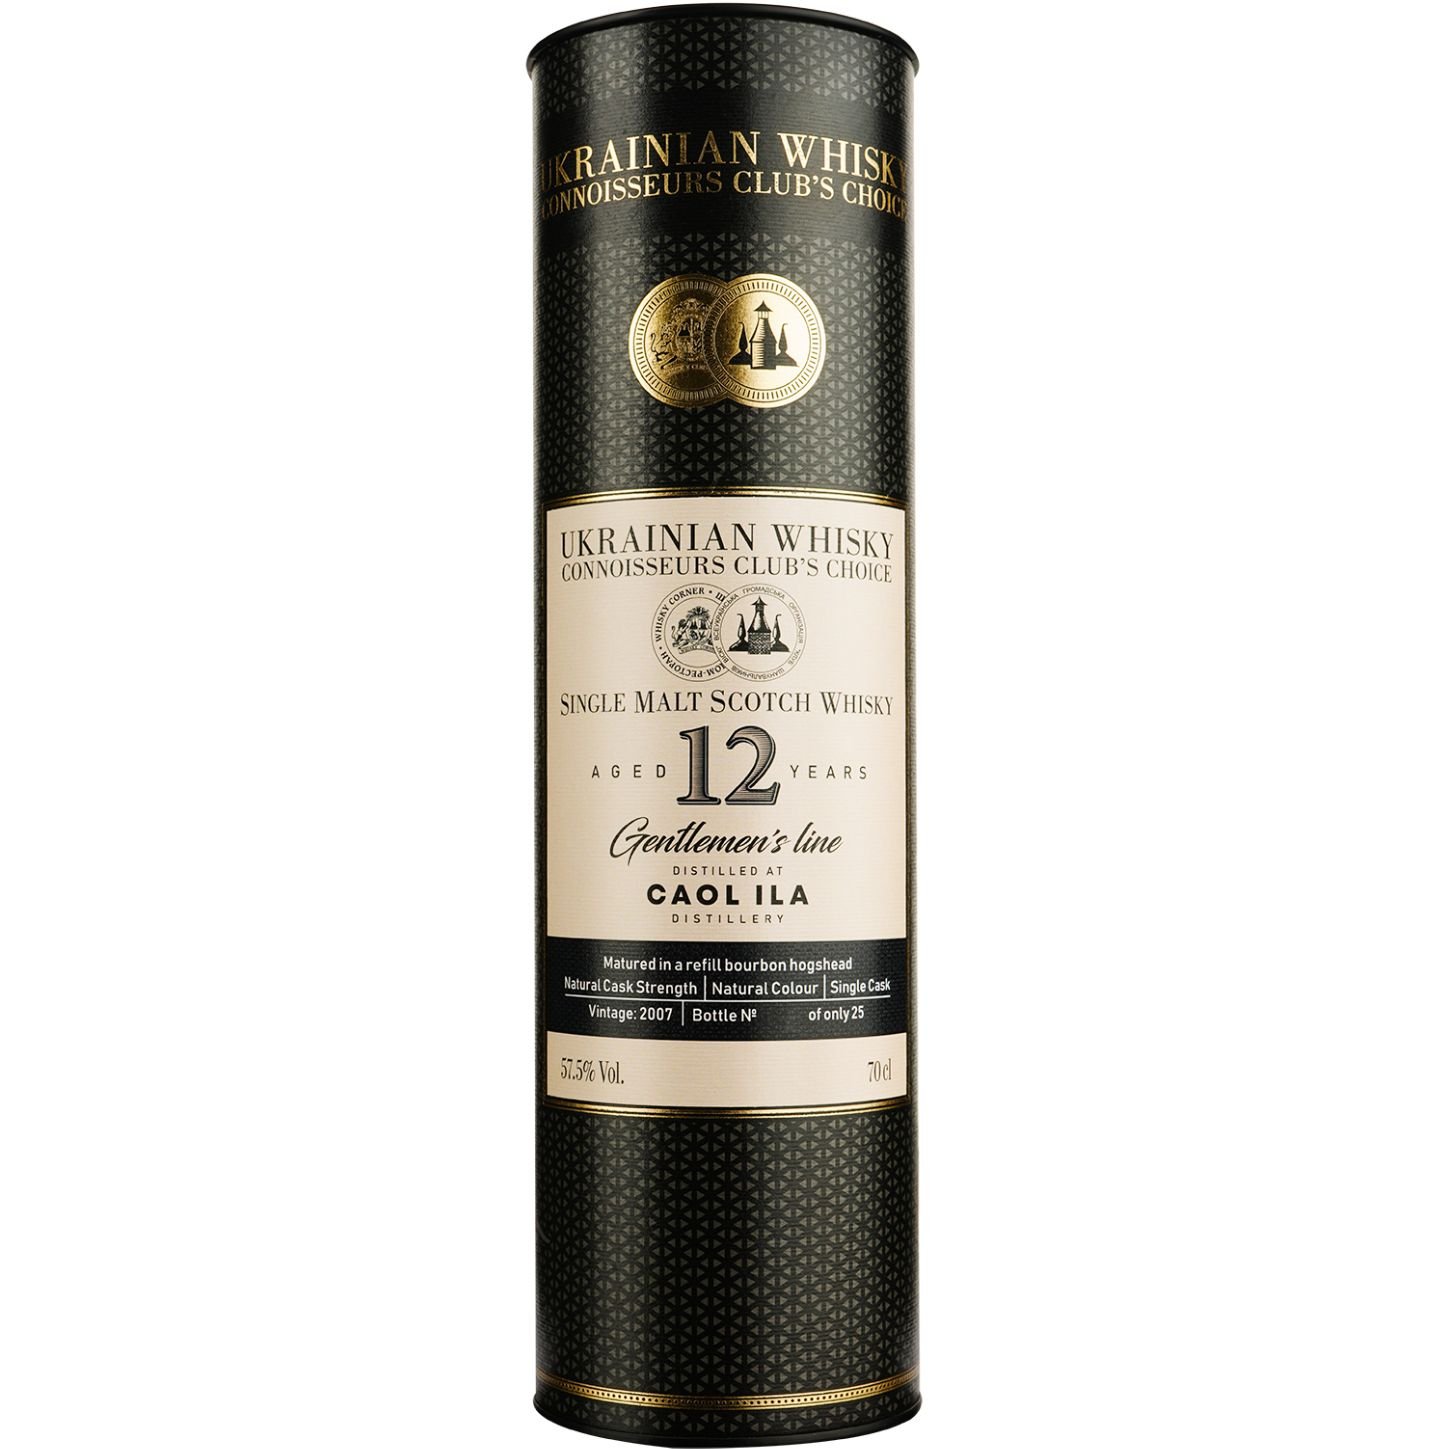 Віскі Caol Ila 12 Years Old Single Malt Scotch Whisky, у подарунковій упаковці, 57,5%, 0,7 л - фото 3